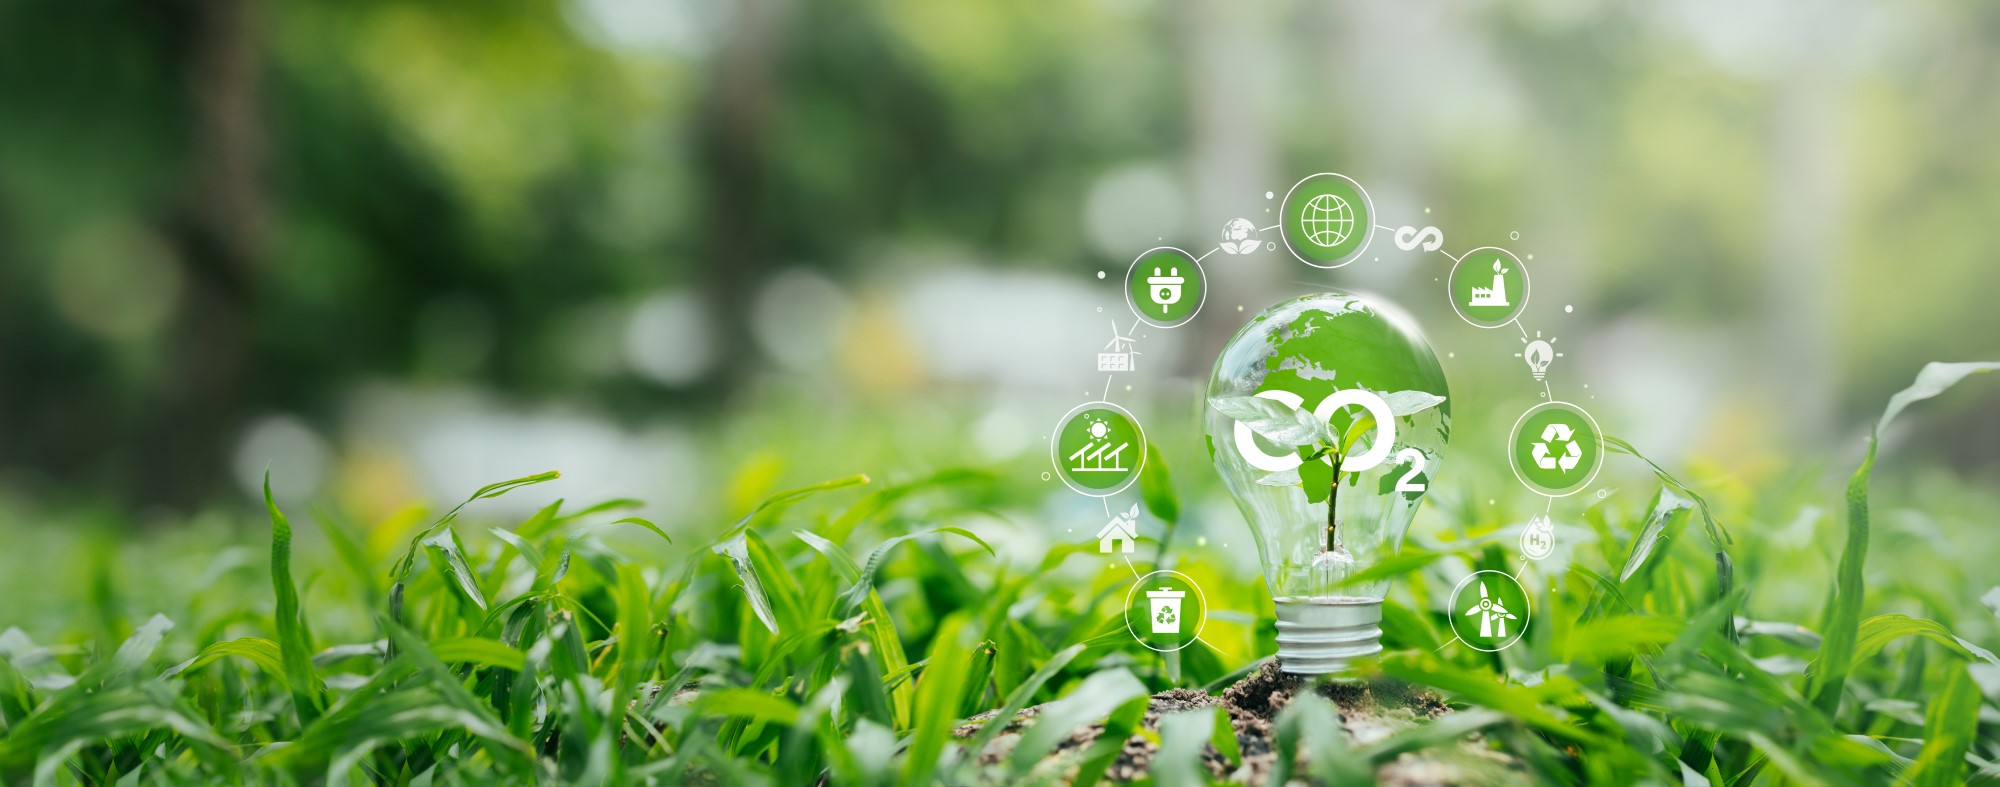 gras met lamp en symbolen rond energiebesparende maatregelen